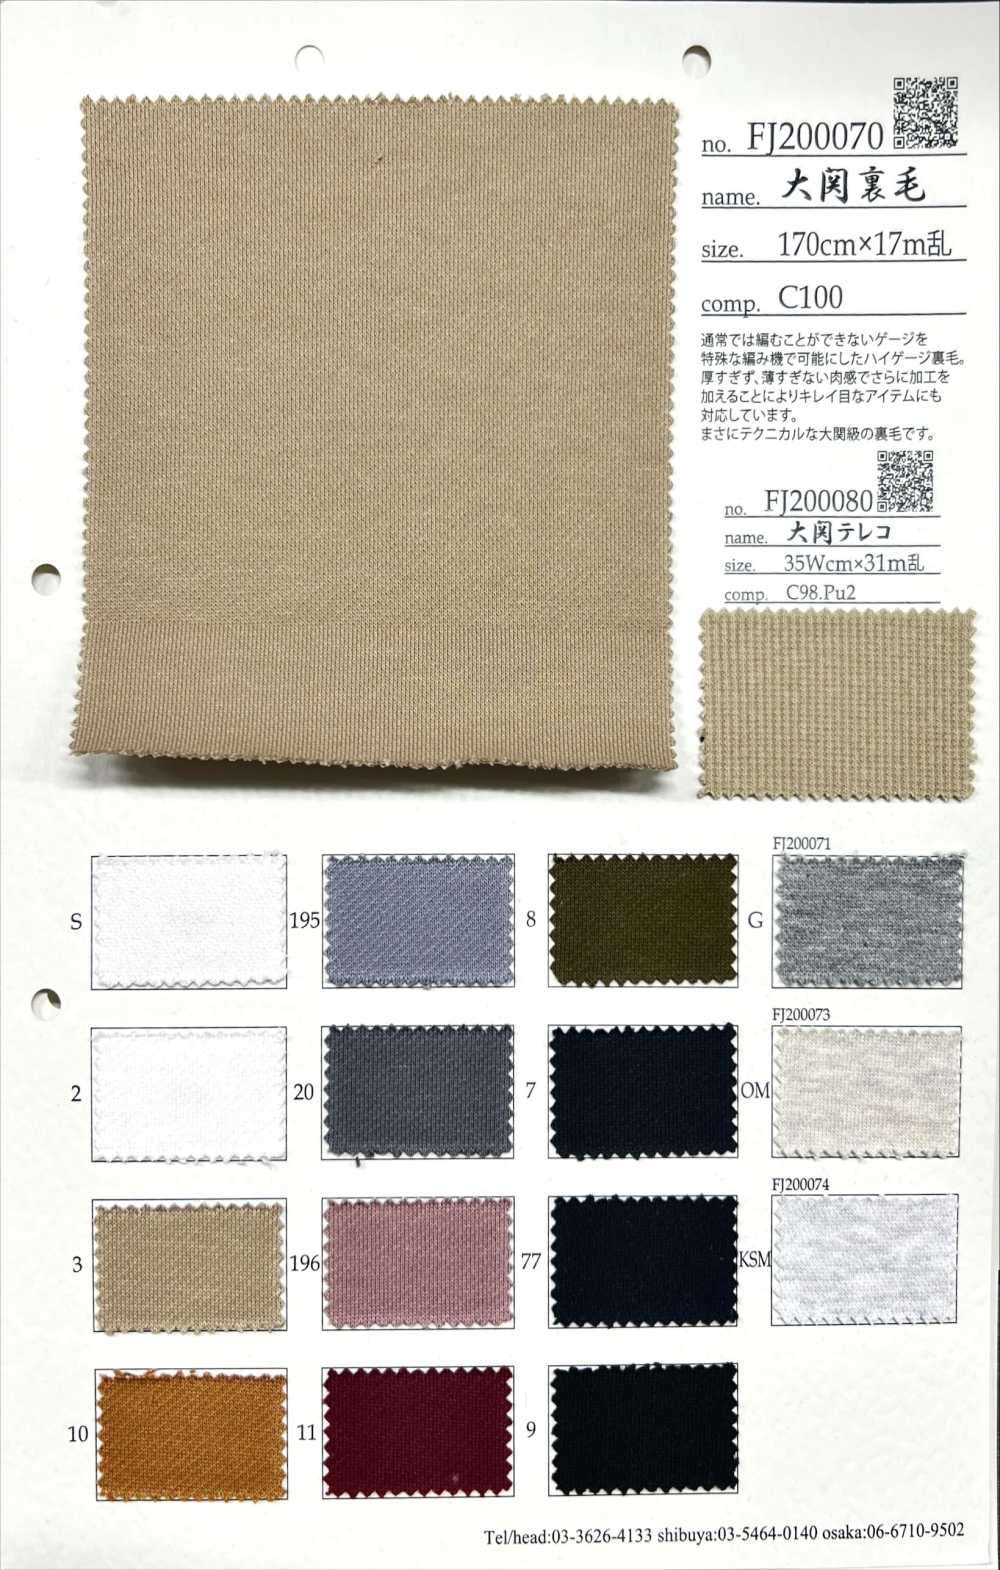 FJ200070 Ozeki-Fleece[Textilgewebe] Fujisaki Textile